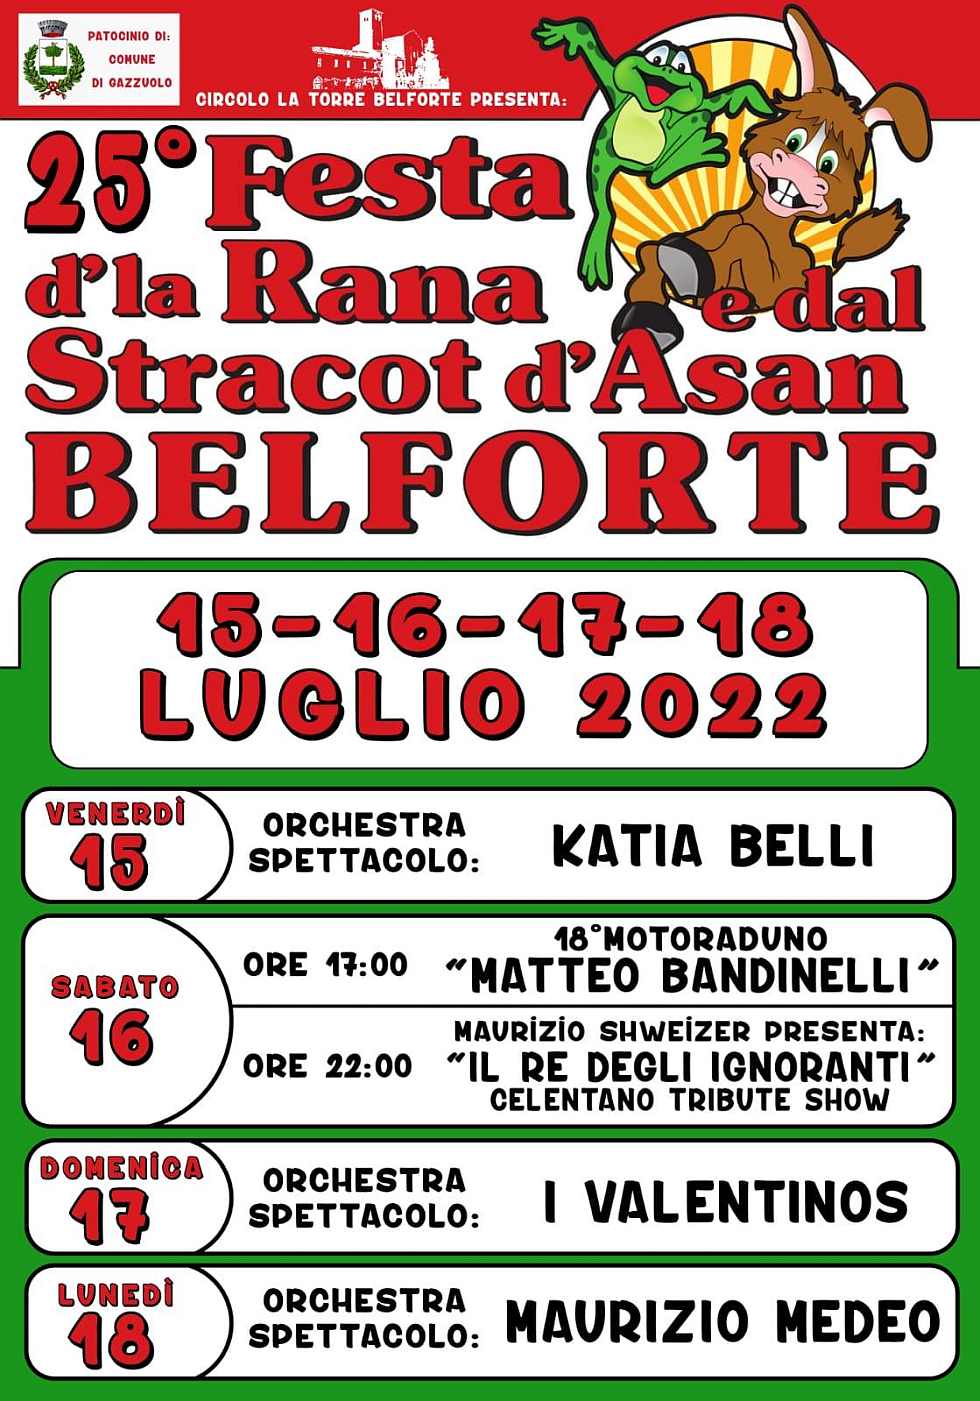 Belforte (MN)
"25^ Festa d’la Rana e dal Stracot d’Asan" 
dal 15 al 18 Luglio 2022